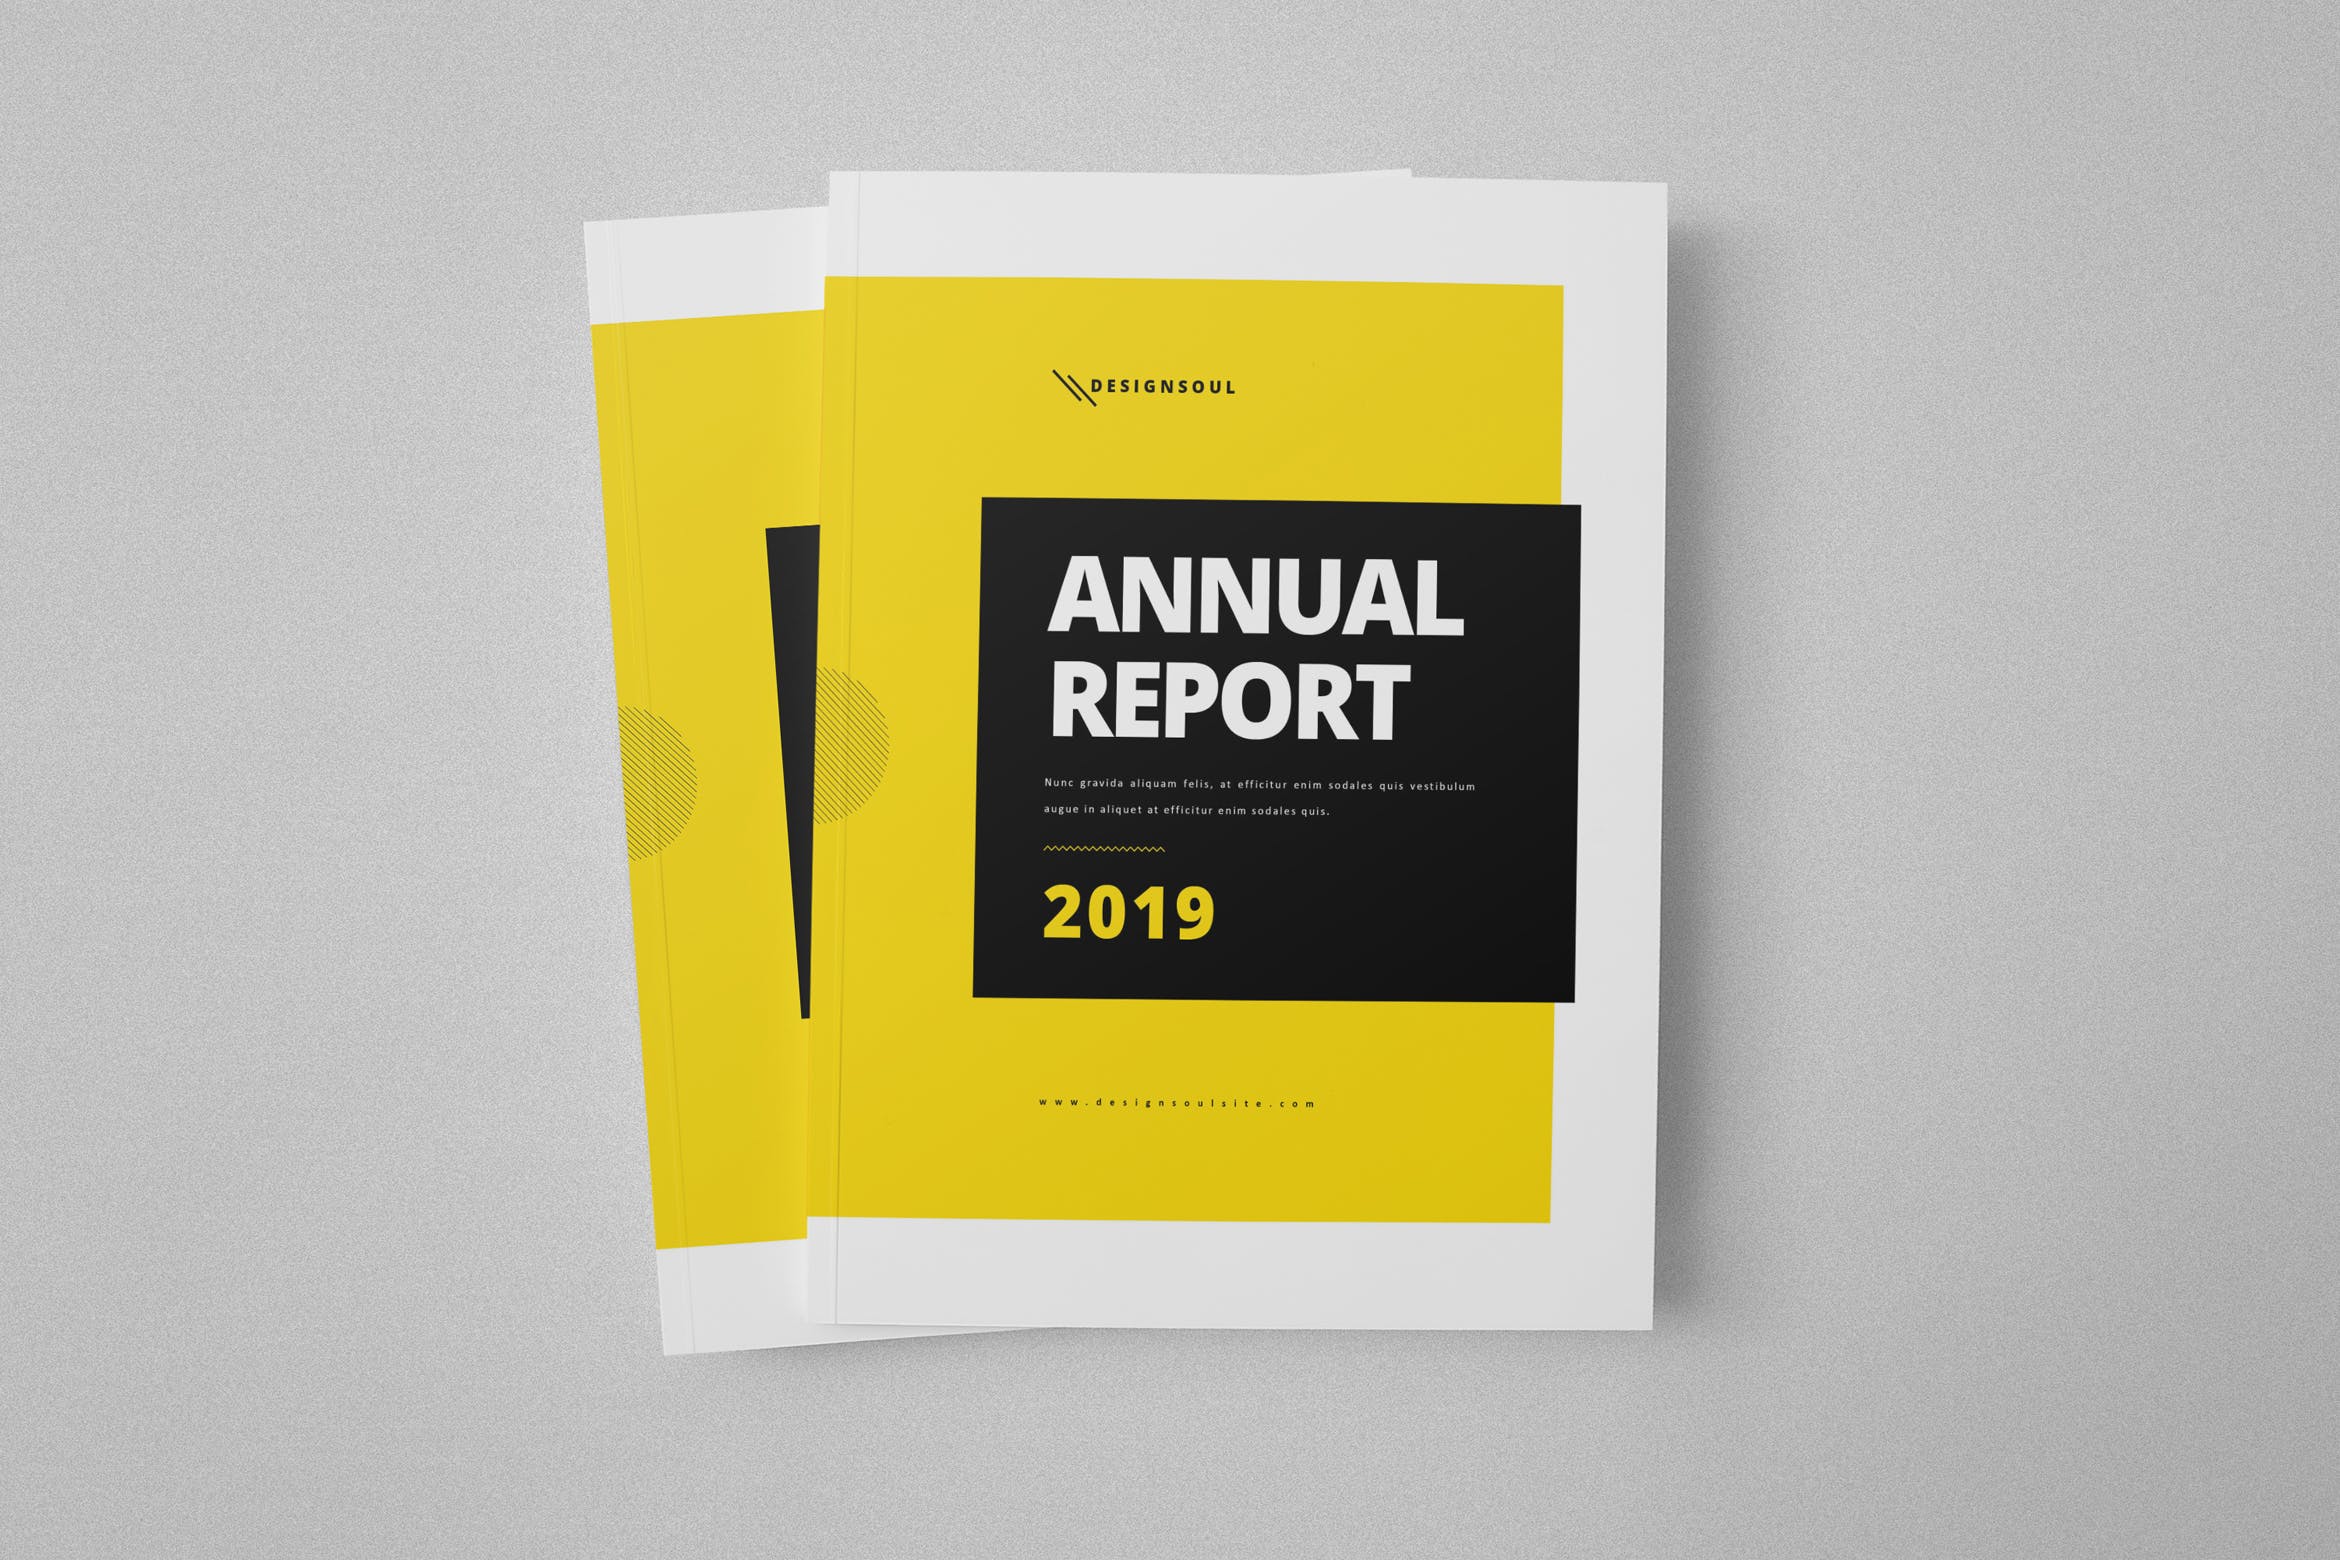 企业年度报告/市场年终报告设计模板 Annual Report插图